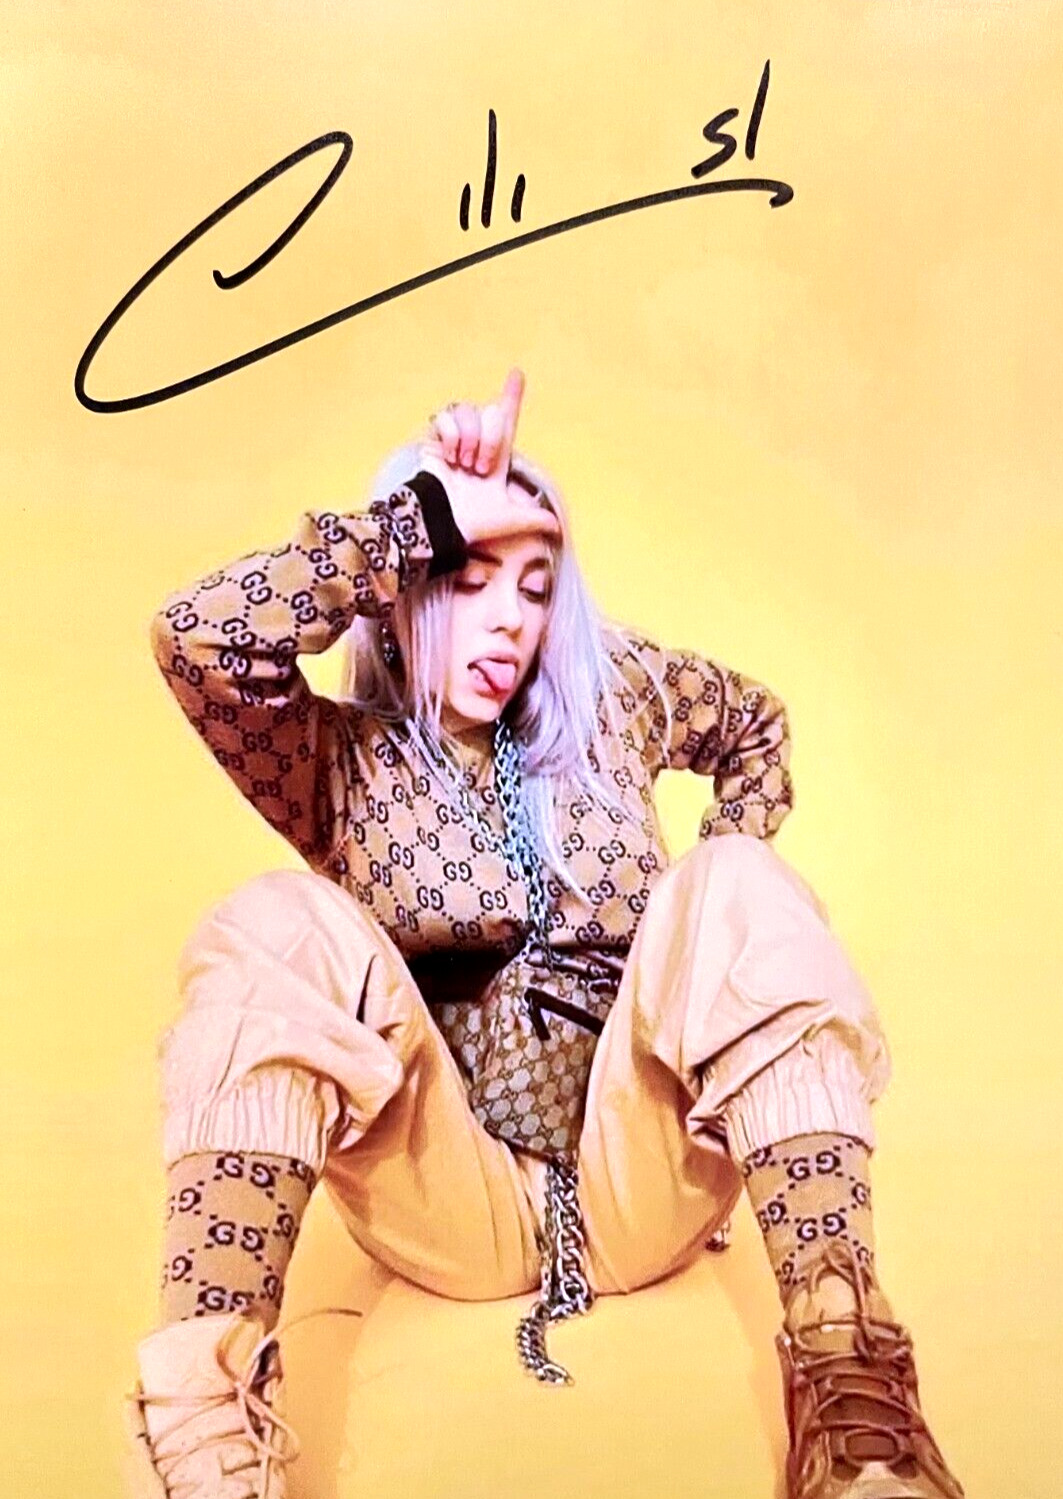 Billie Eilish Hand-Signed 7x5 inch Color Photo Original Autograph Signature